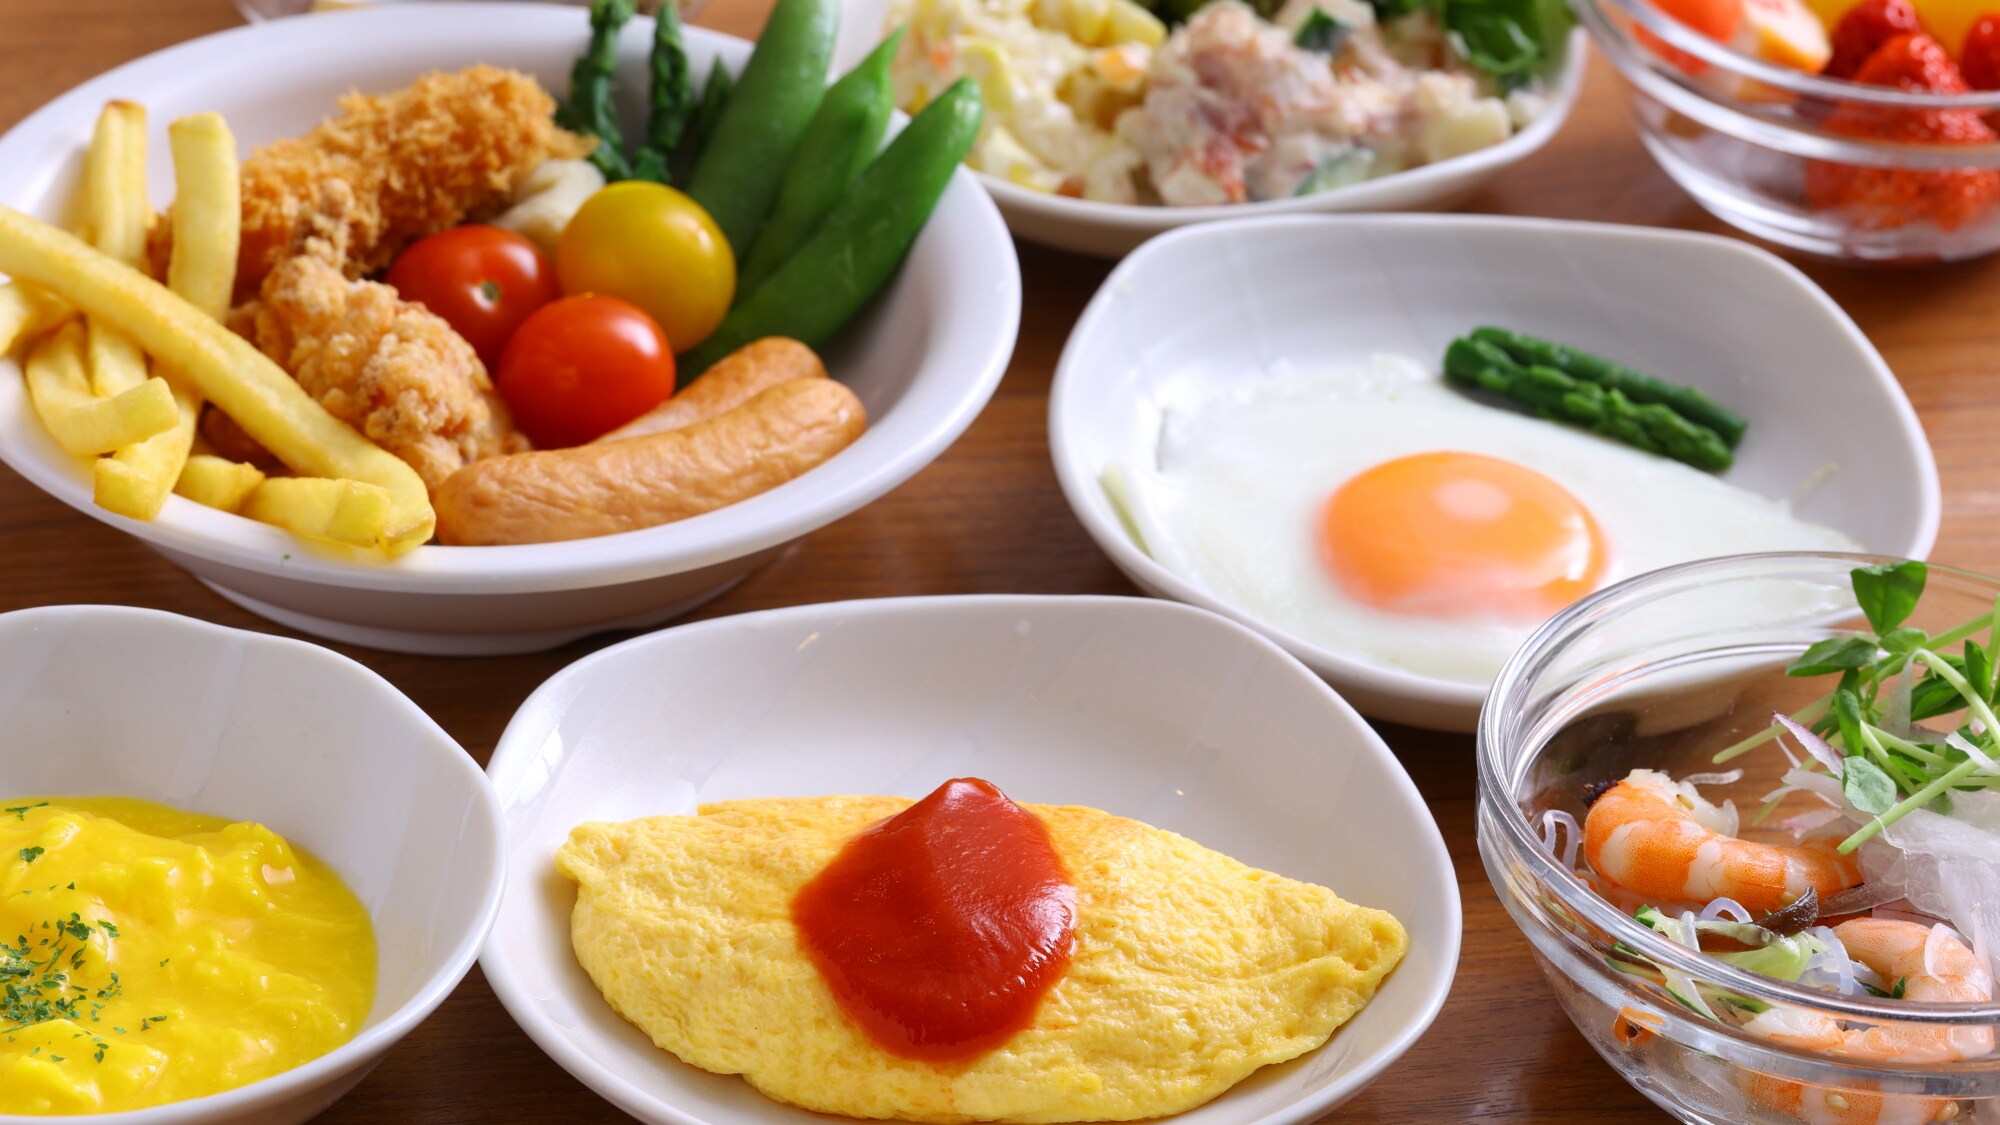 ◆ Breakfast buffet (image)